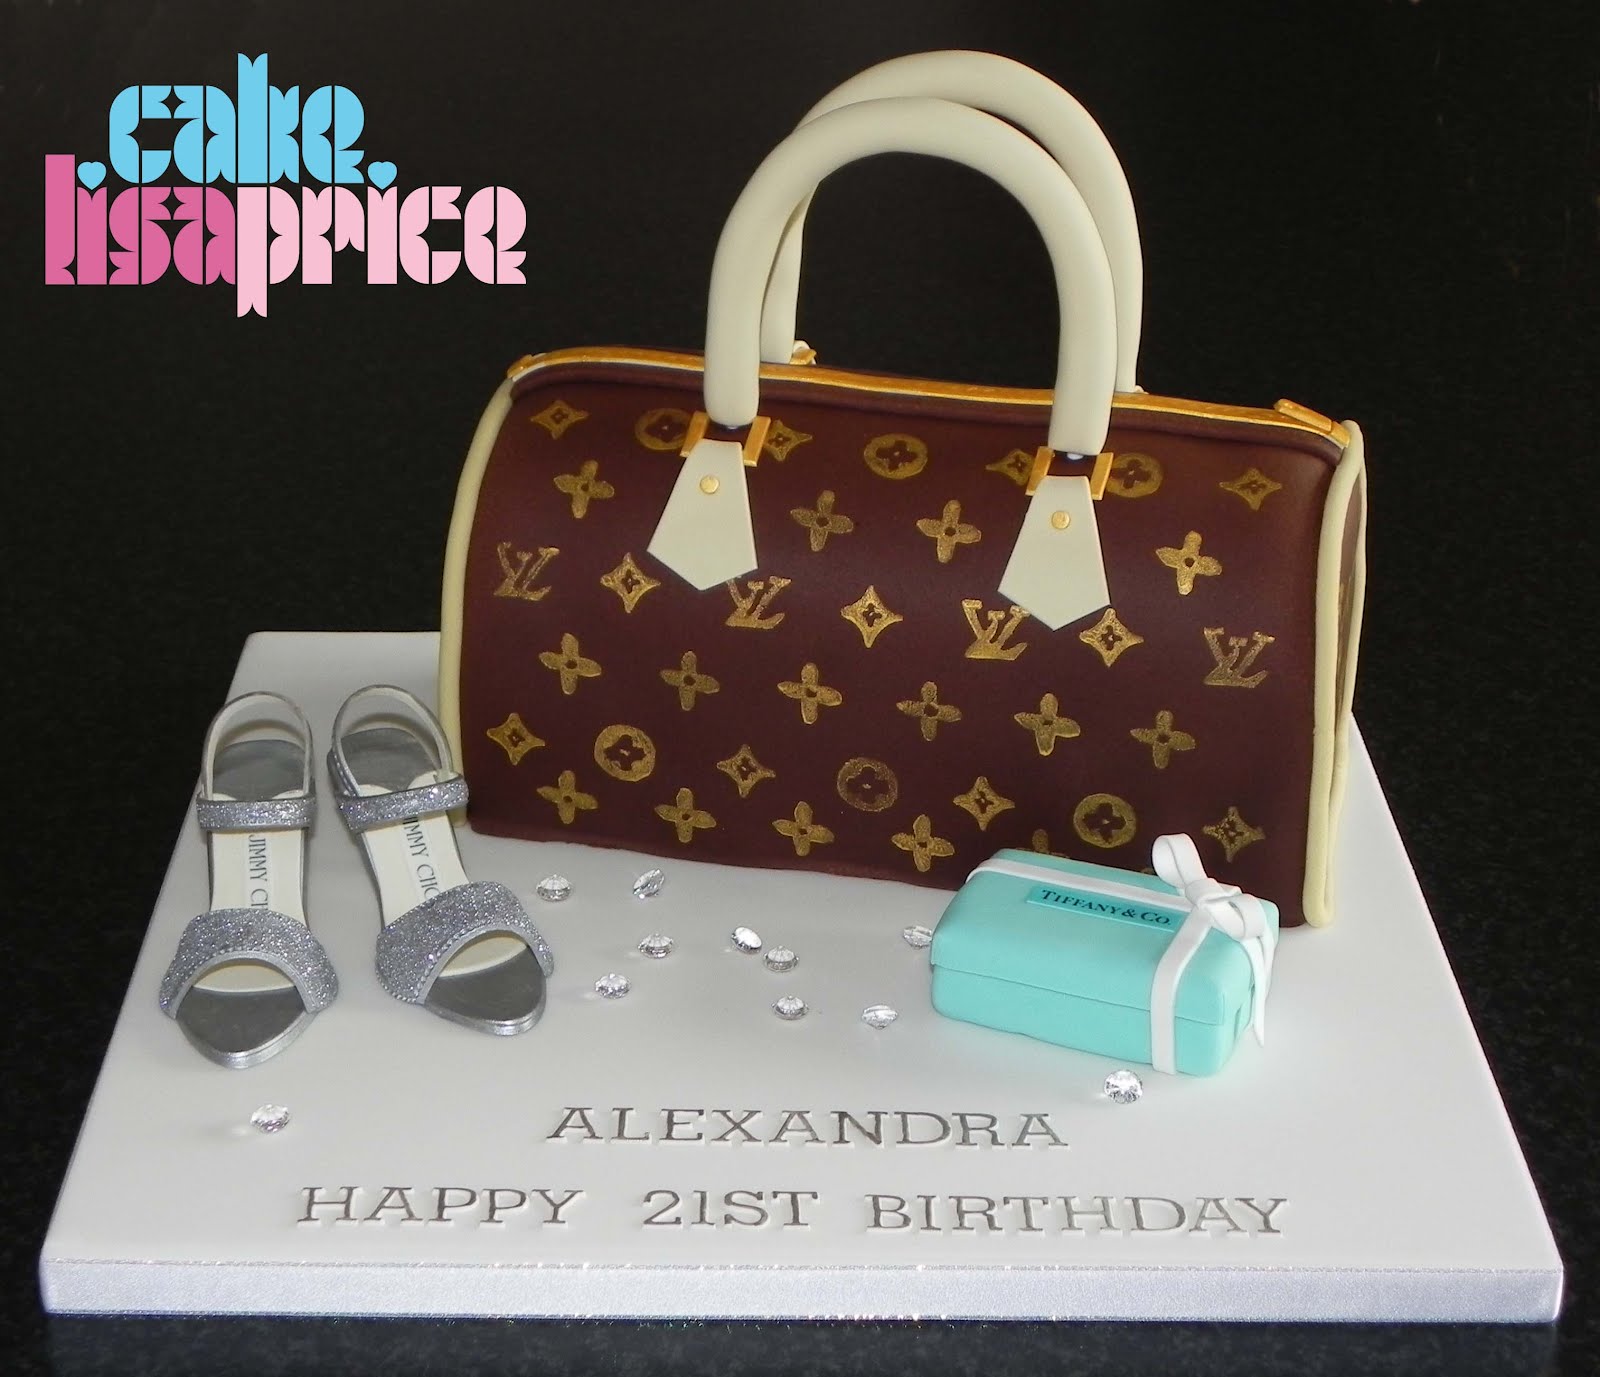 Cake by Lisa Price: Louis Vuitton handbag cake